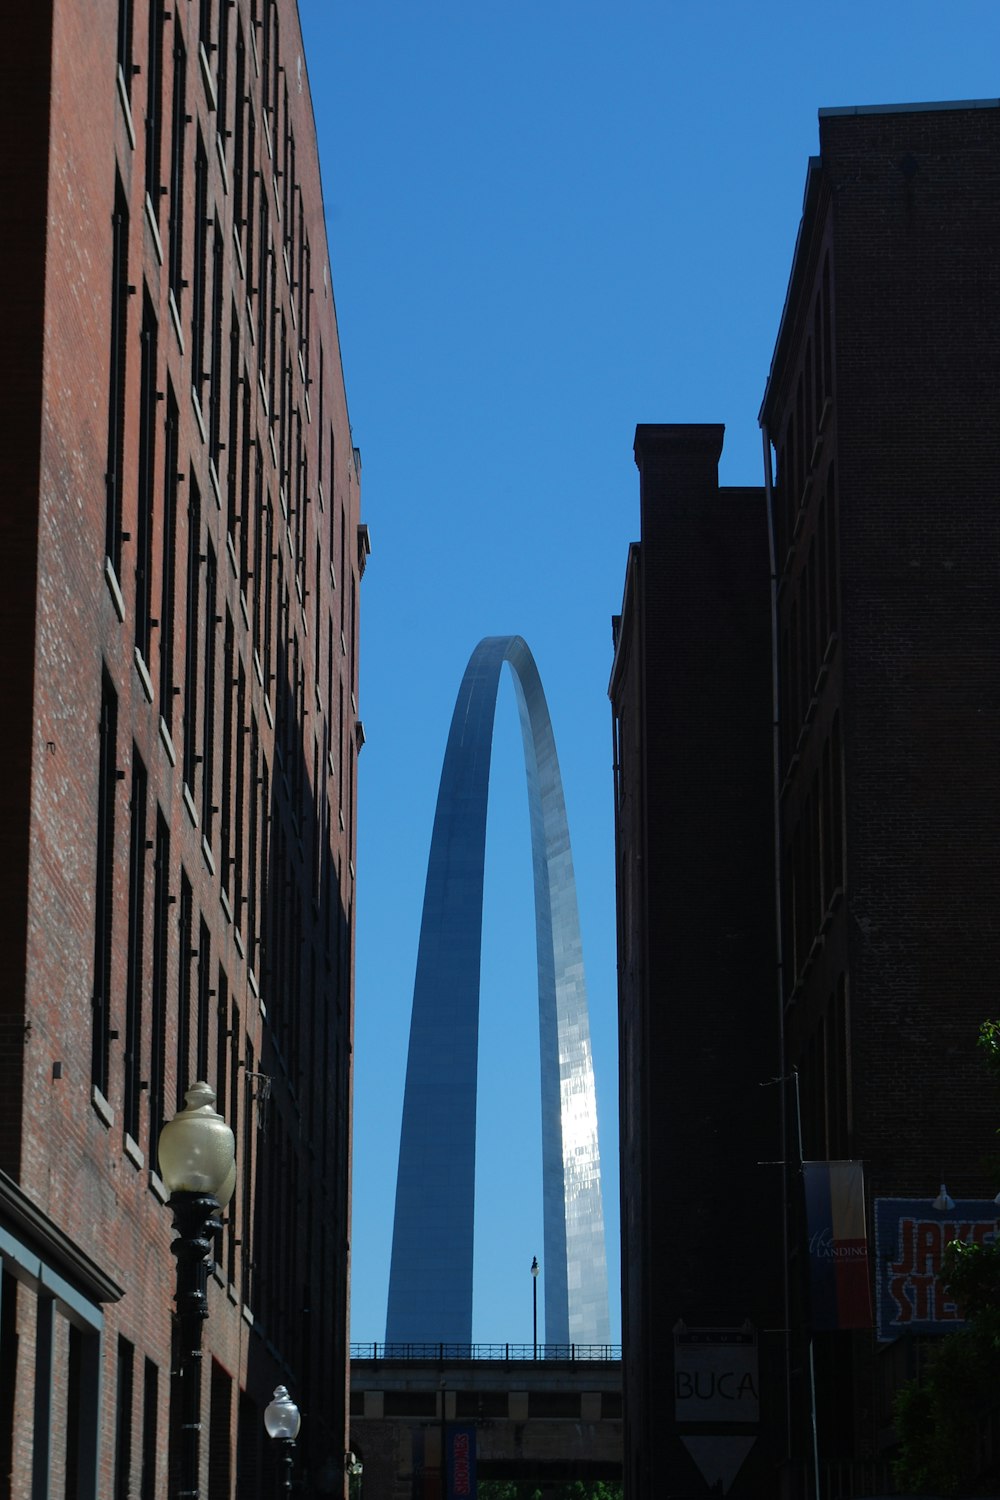 Der Bogen des St. Louis Arch, der über der Stadt thront